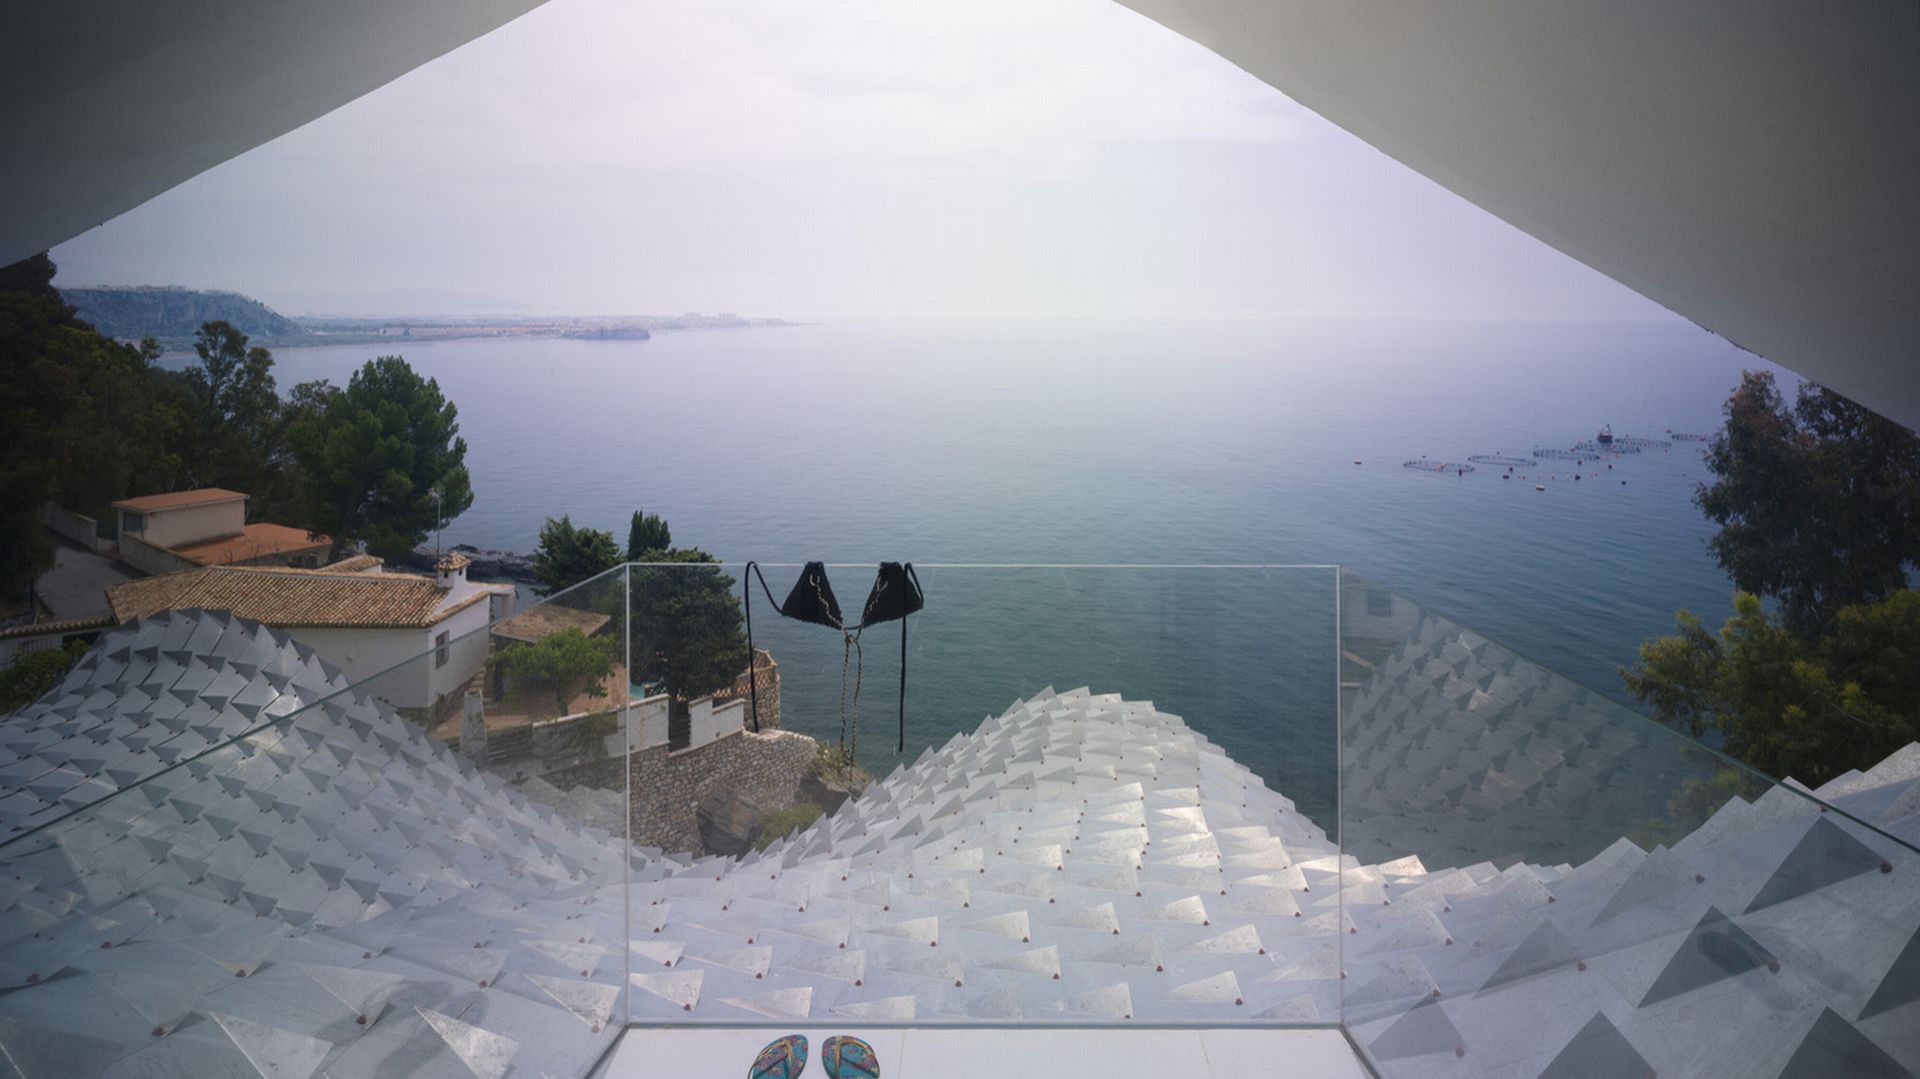 Dom na klifie z widokiem na Morze Śródziemne